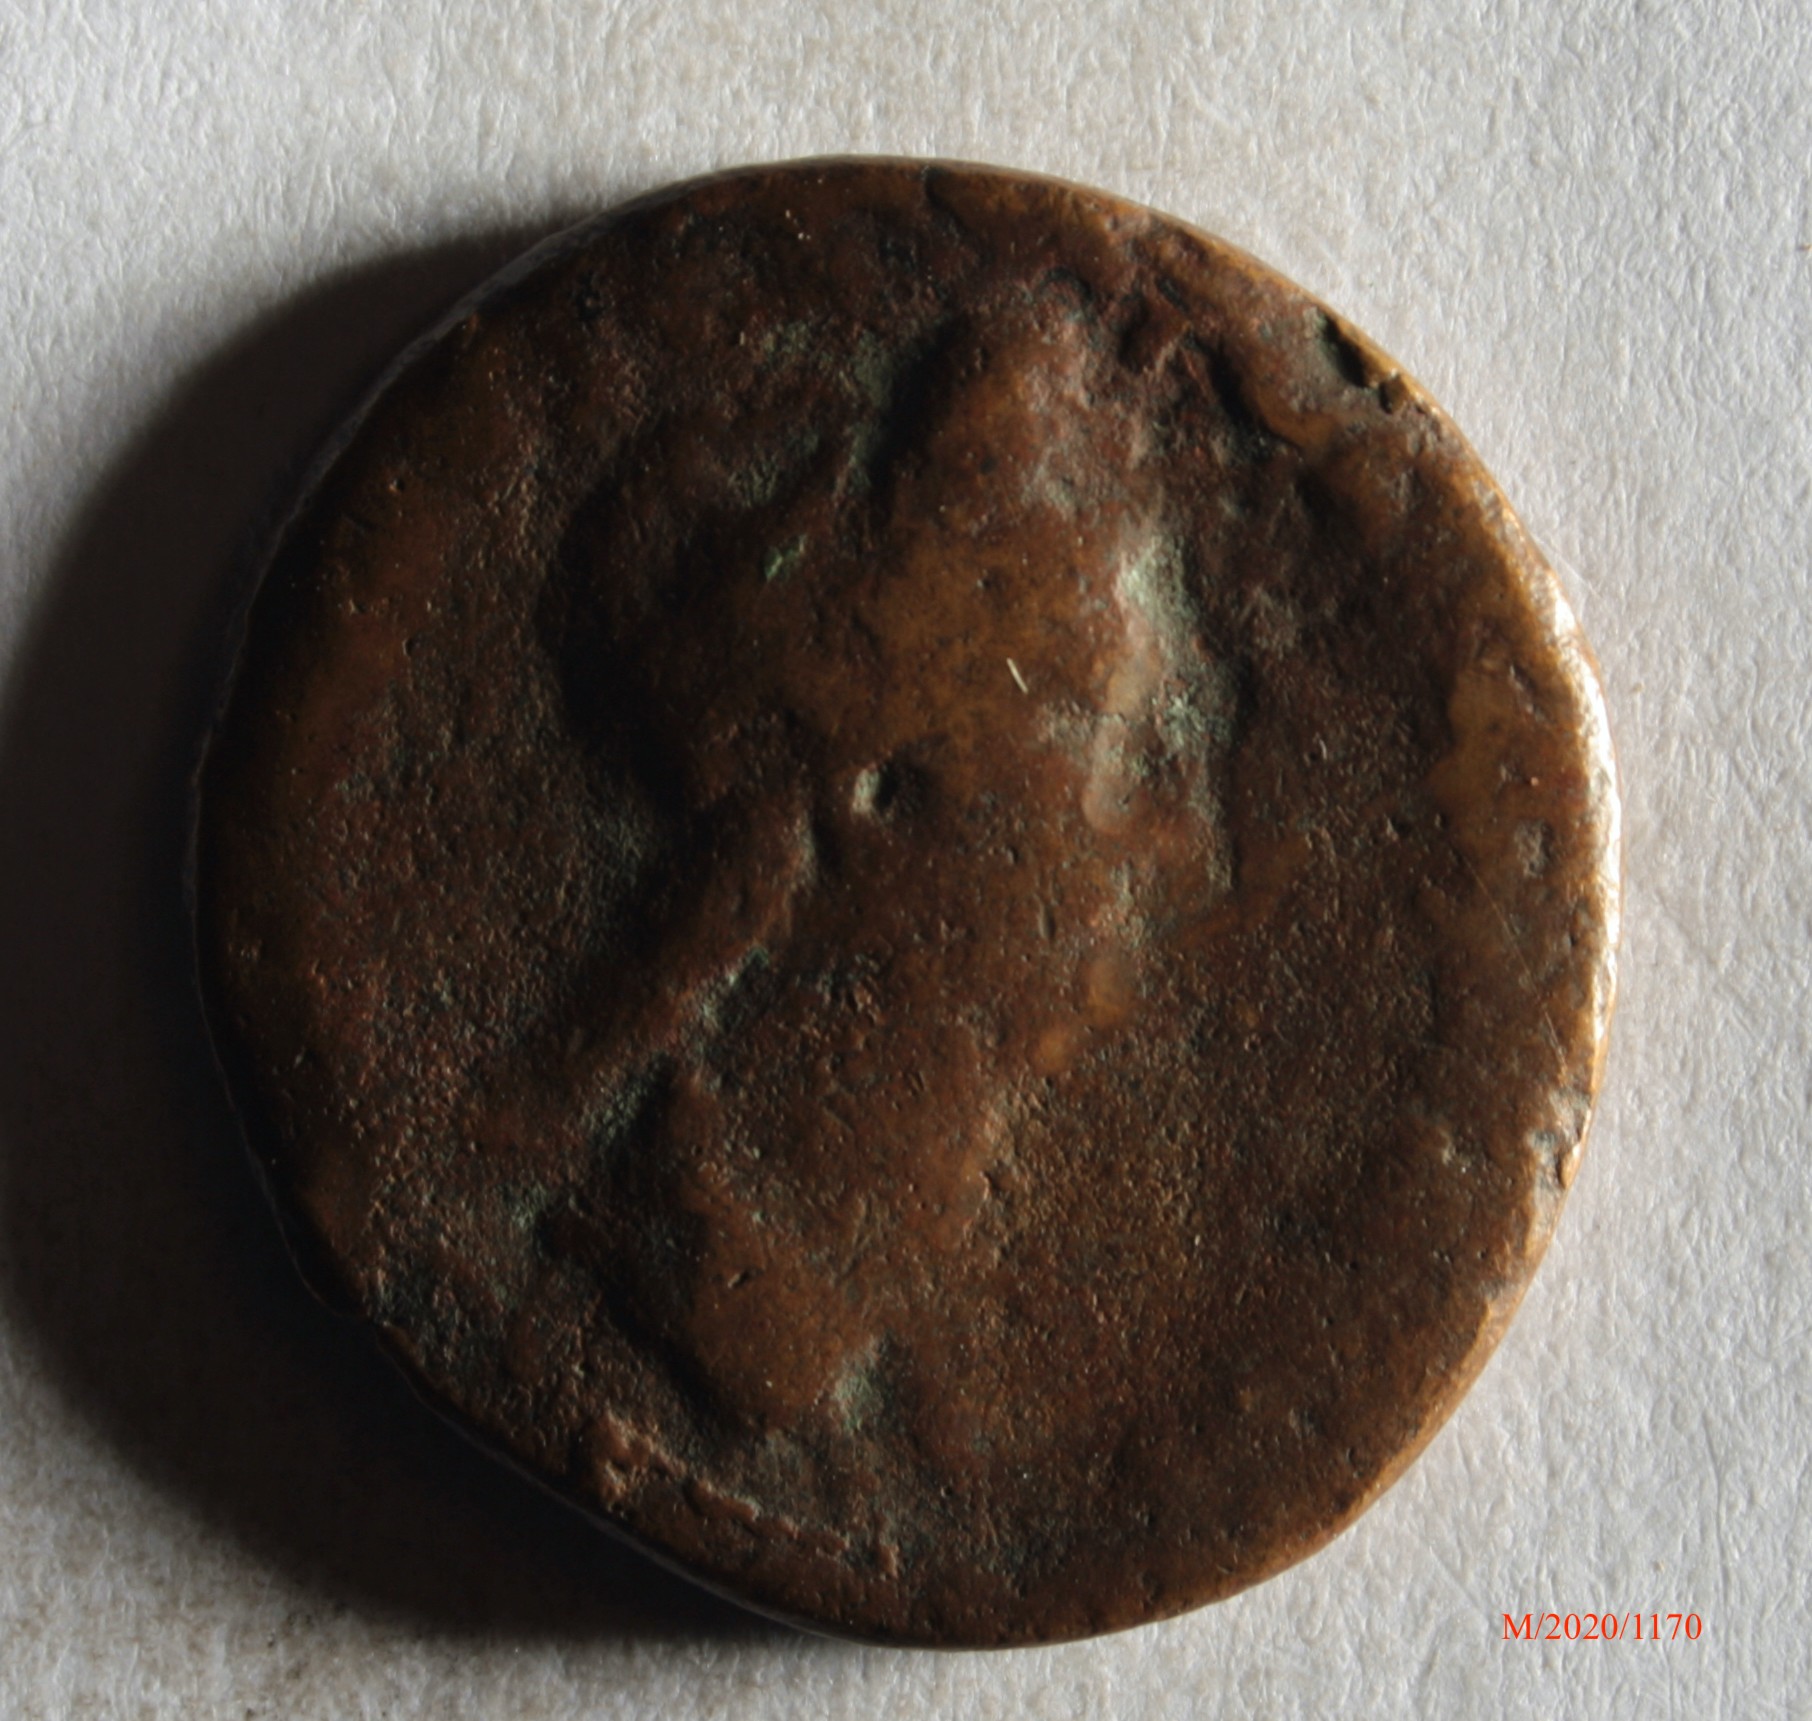 Römische Münze, Nominal As, Prägeherr Hadrian f. Sabina, Prägeort nicht bestimmbar, Fälschung (Museumsgesellschaft Bad Dürkheim e.V. CC BY-NC-SA)